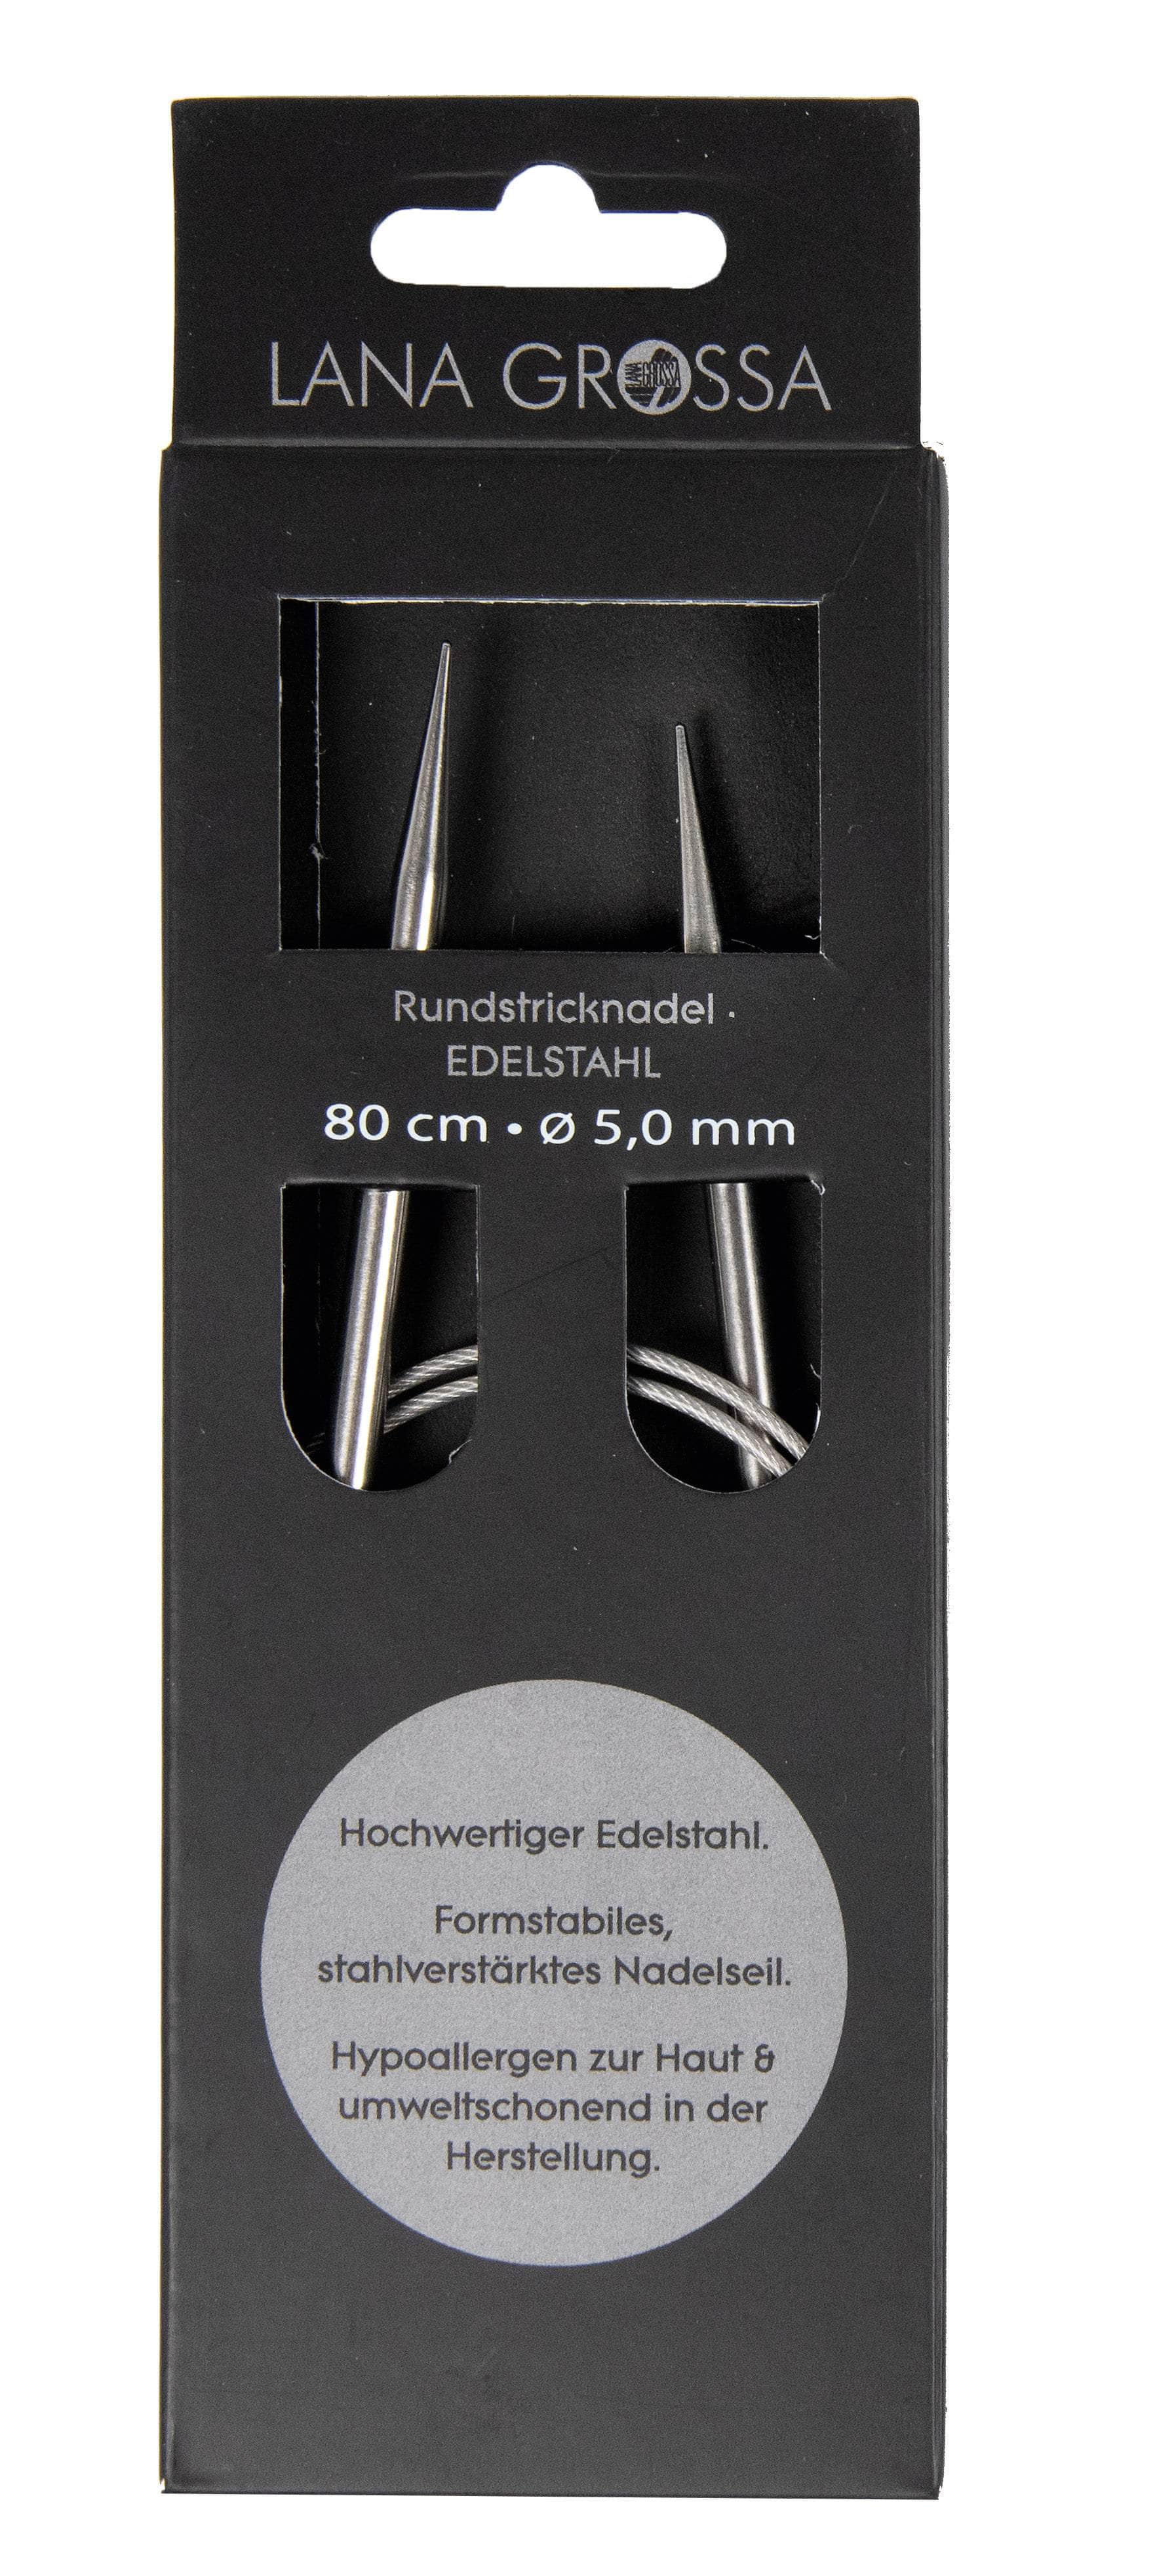 LANA GROSSA Nadeln 10,0mm|80cm Rundstricknadel Edelstahl